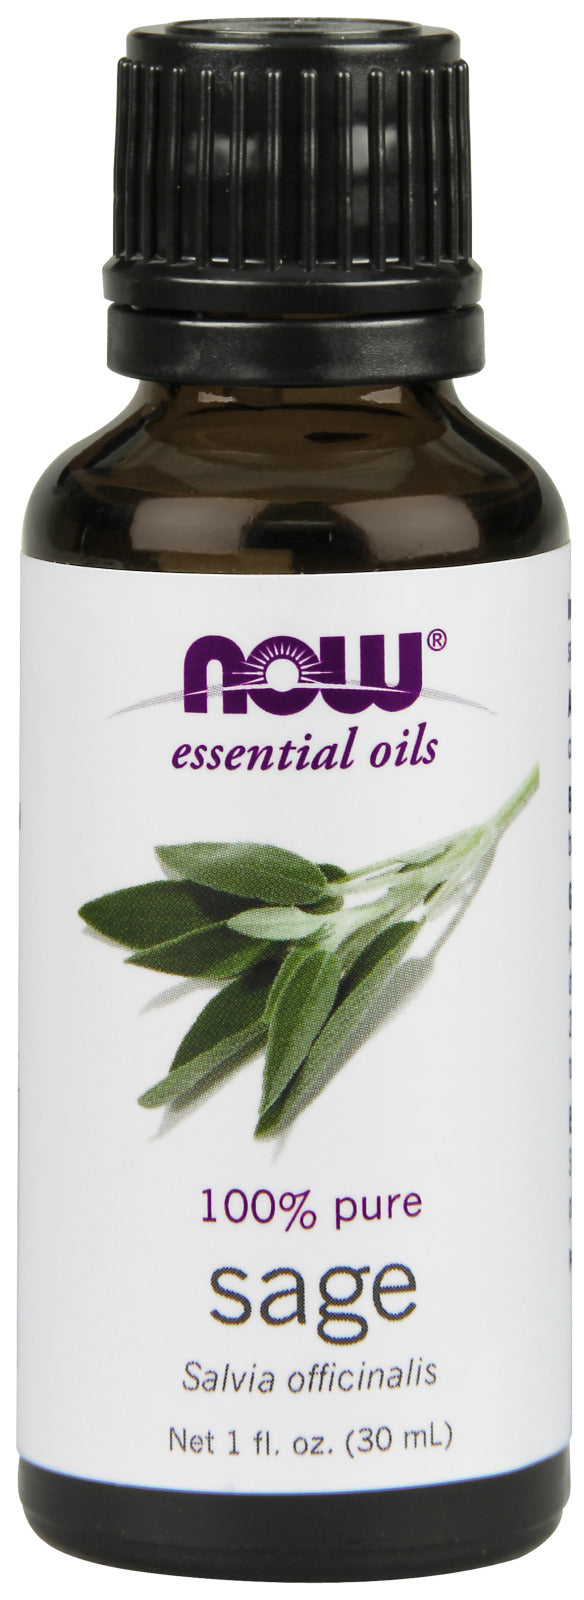 Sage Oil 1 fl oz (30 ml) | By Now Essential Oils - Best Price